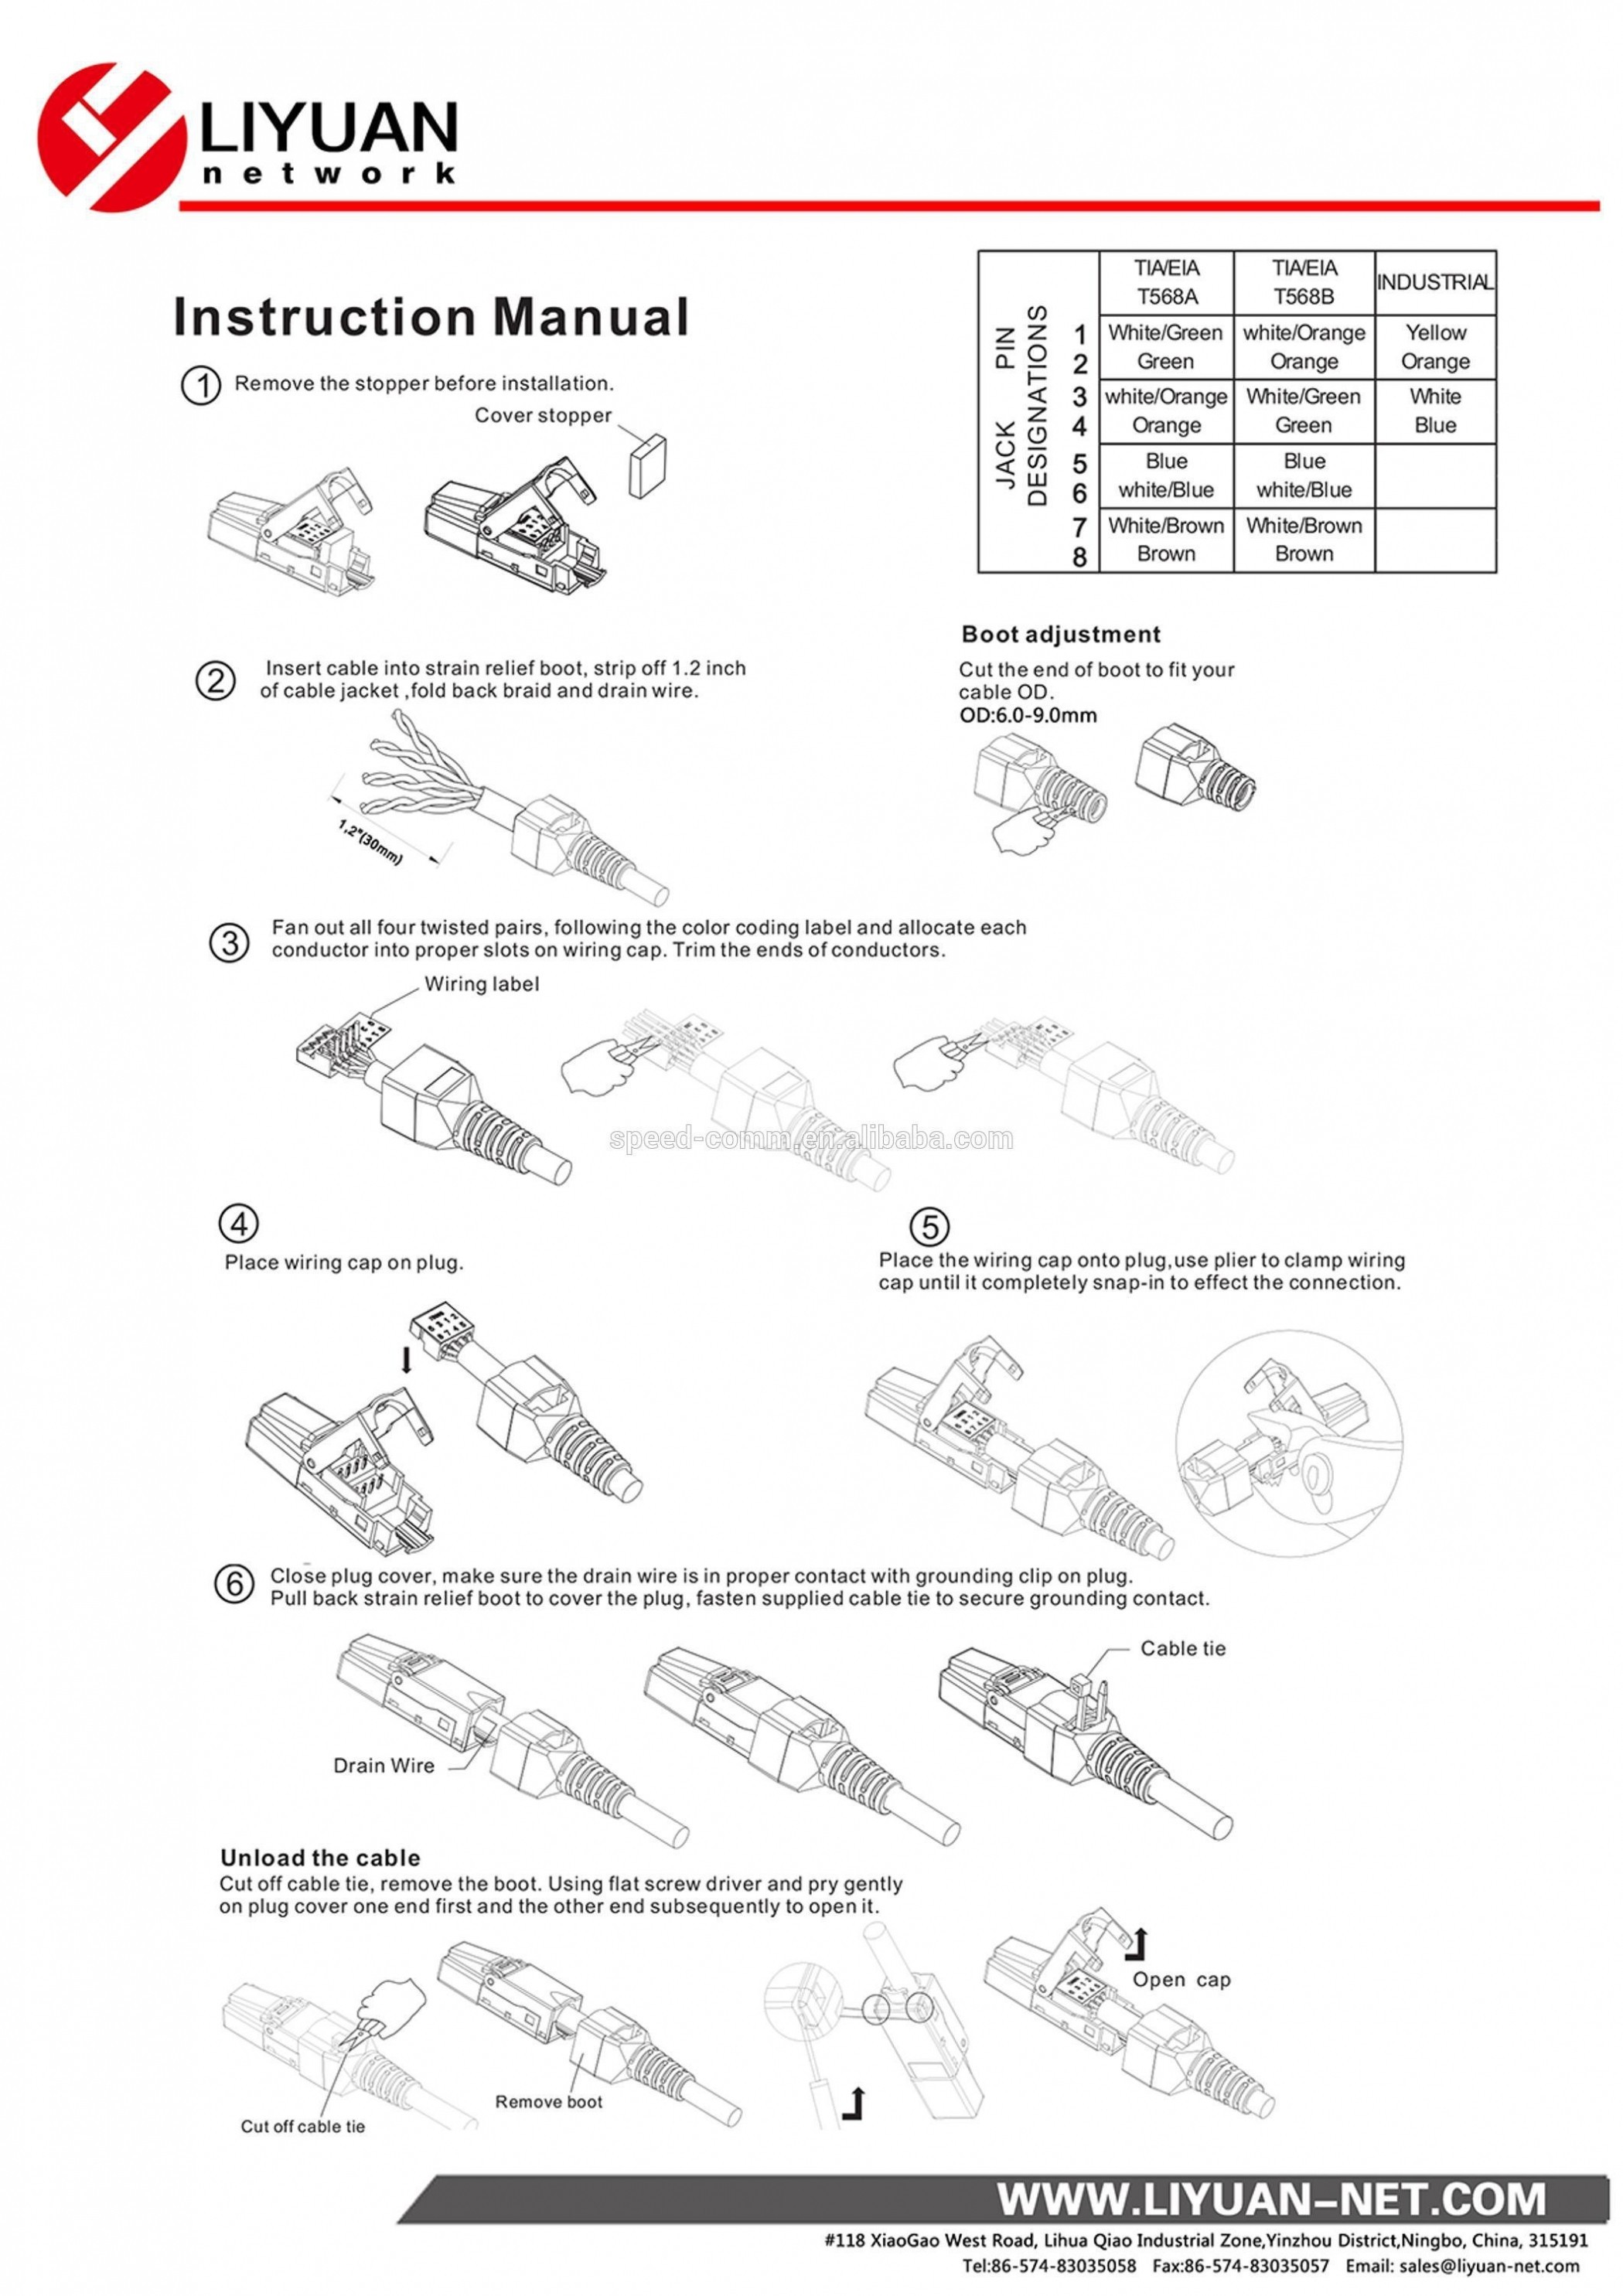 4 Flat Trailer Wiring Diagram Inspirational 5 Pin Trailer Wiring Diagram – 7 Pin Trailer Plug Wiring Diagram